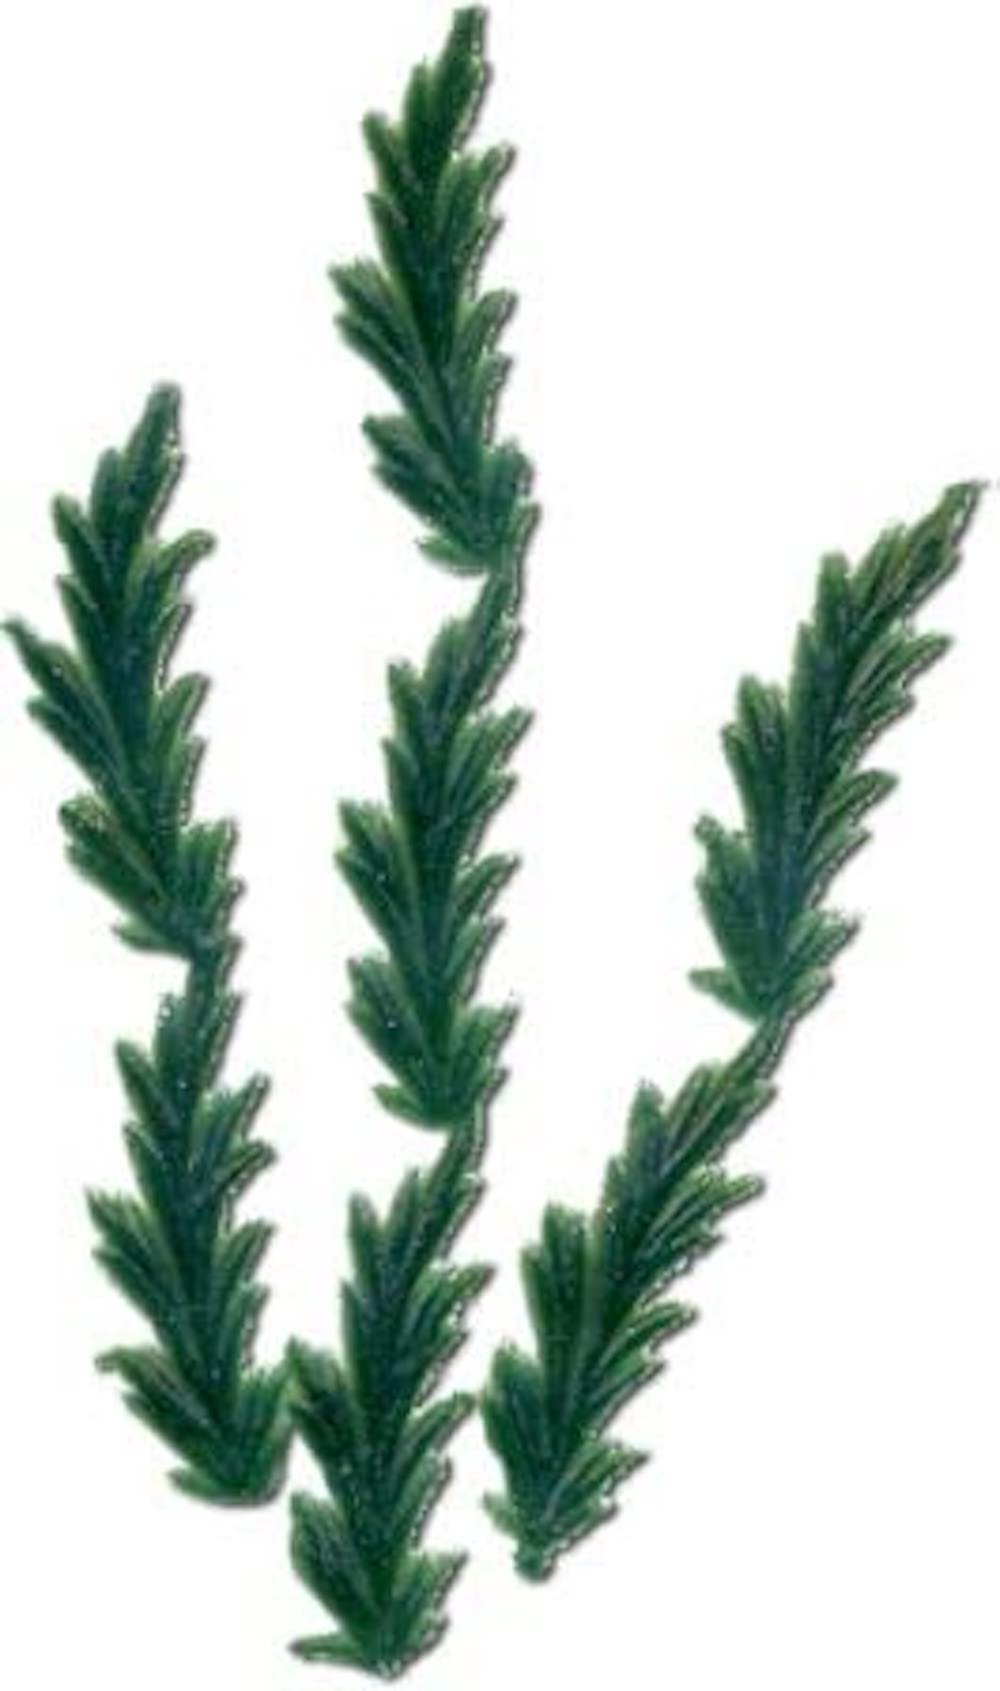 Wachs-Thujablätter, grün  28x 12 mm; 5 Stk./SB 